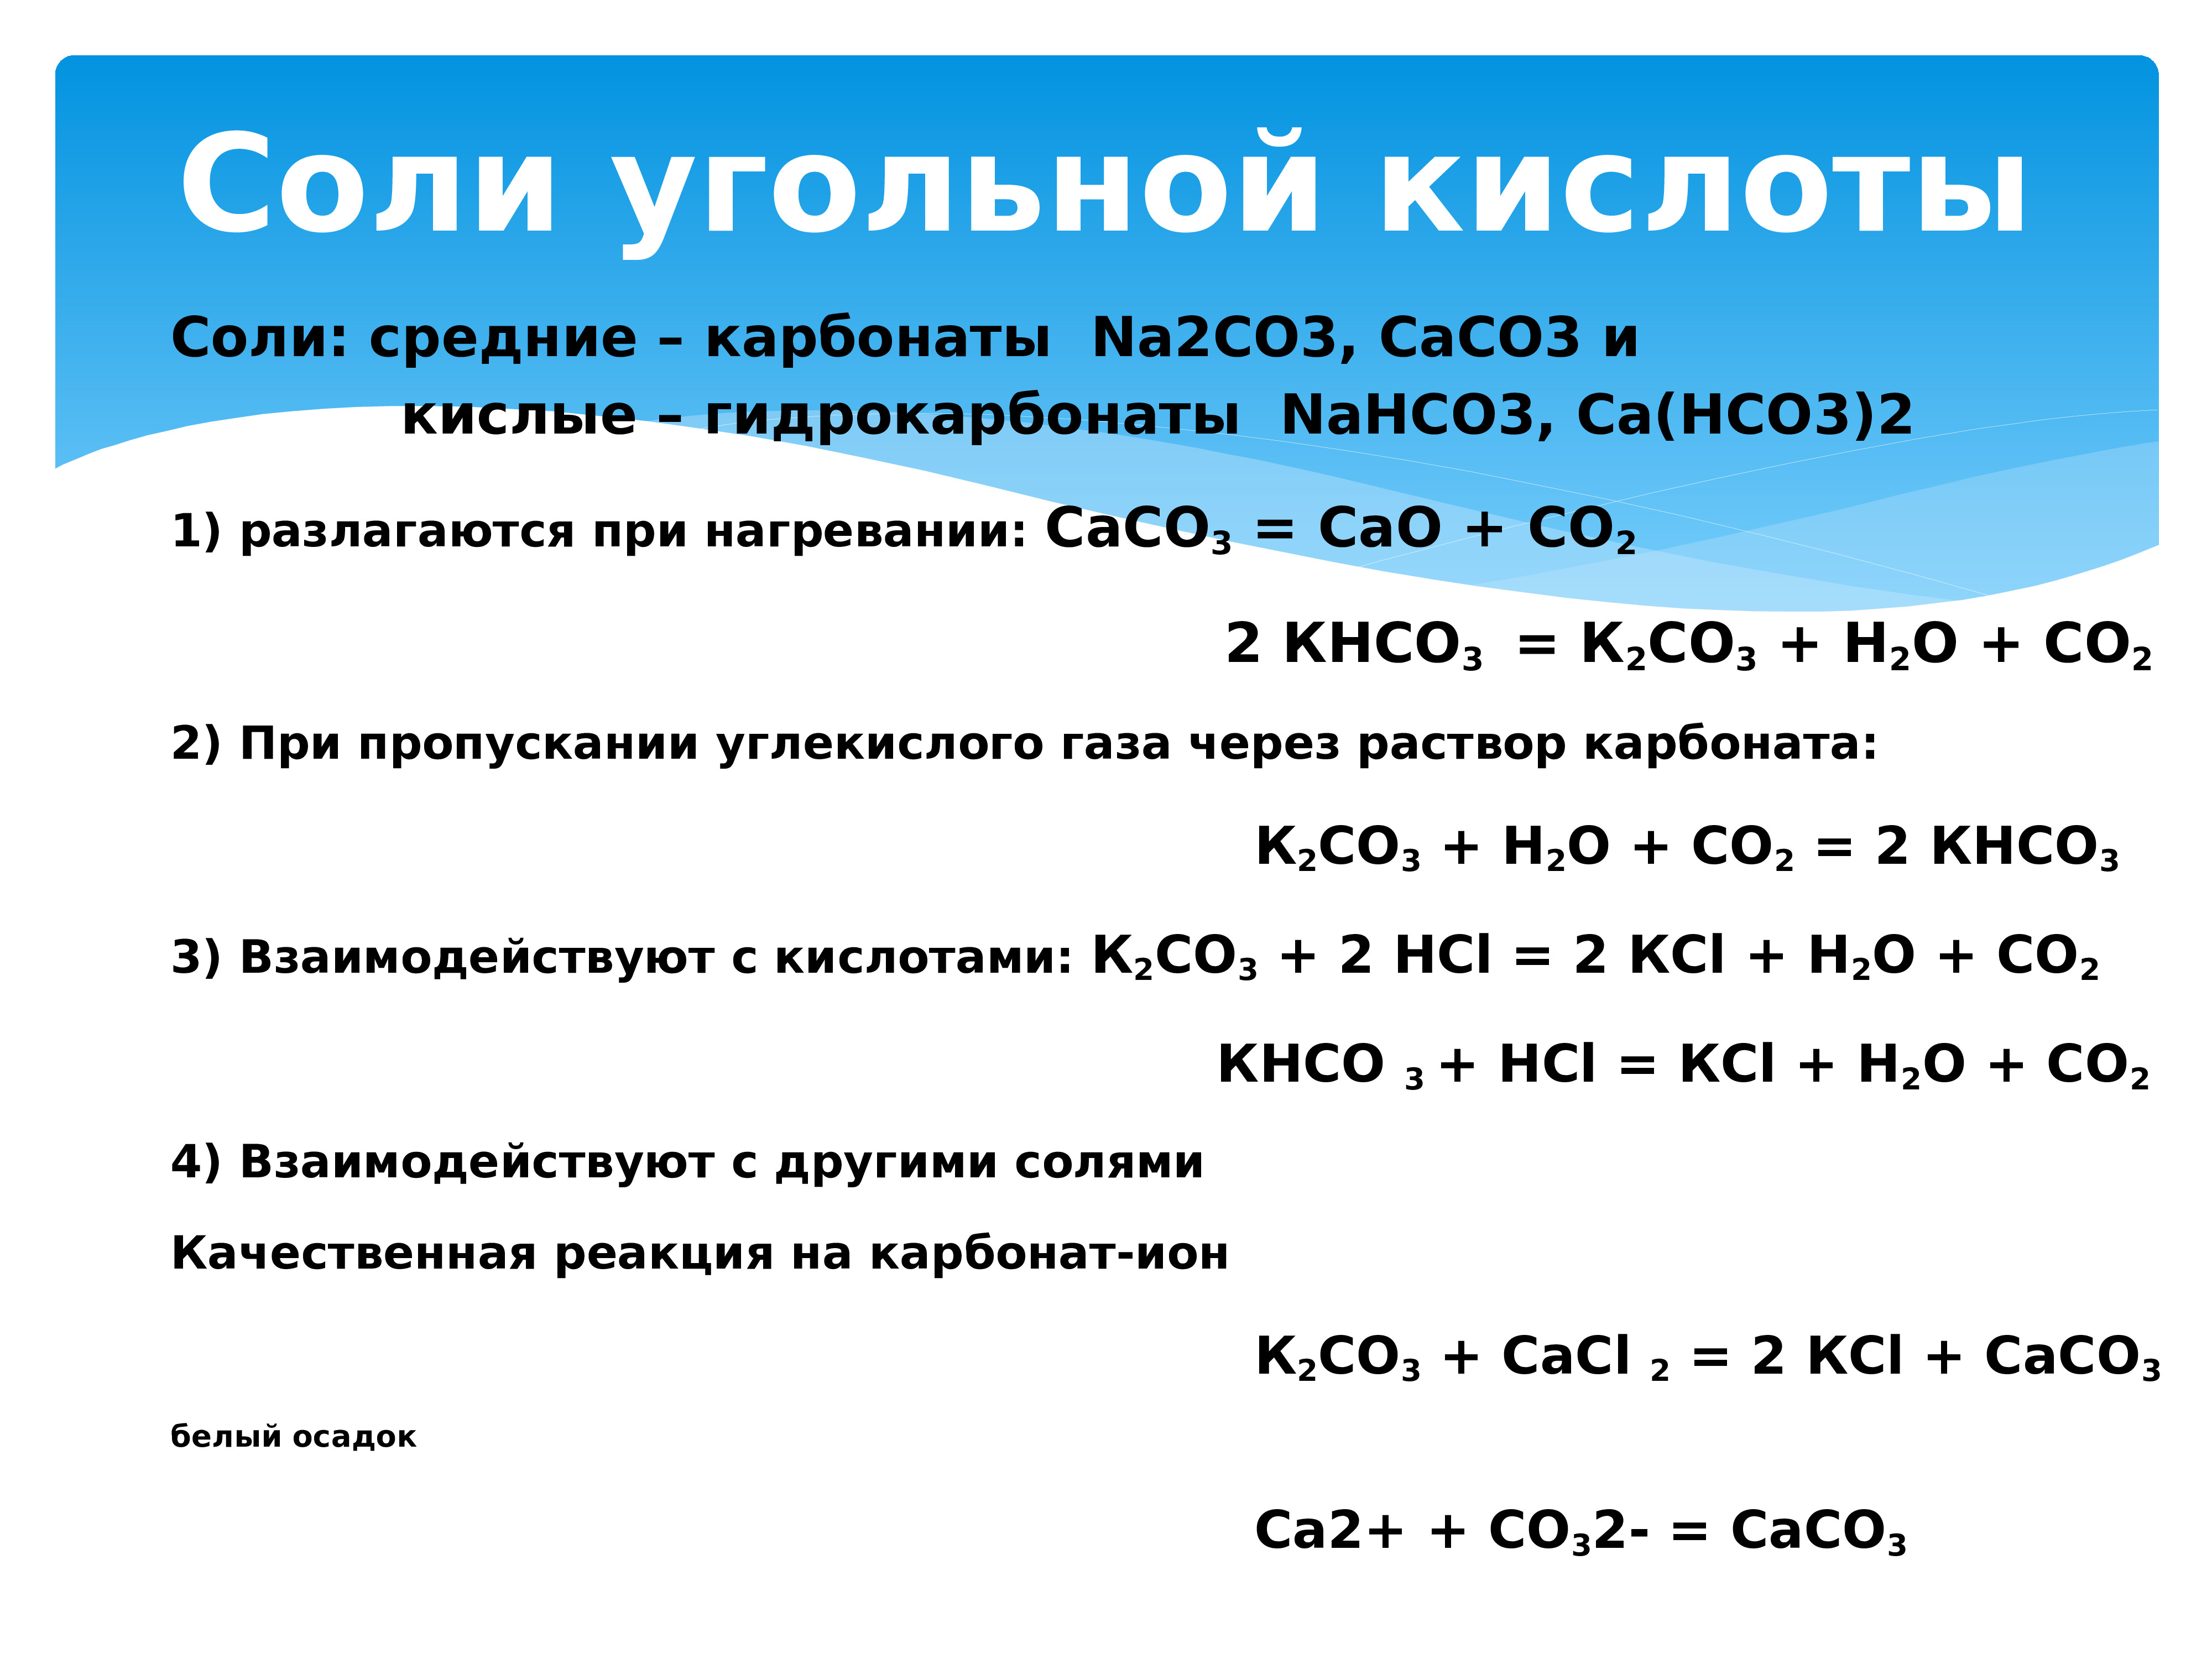 Углекислый газ основной оксид